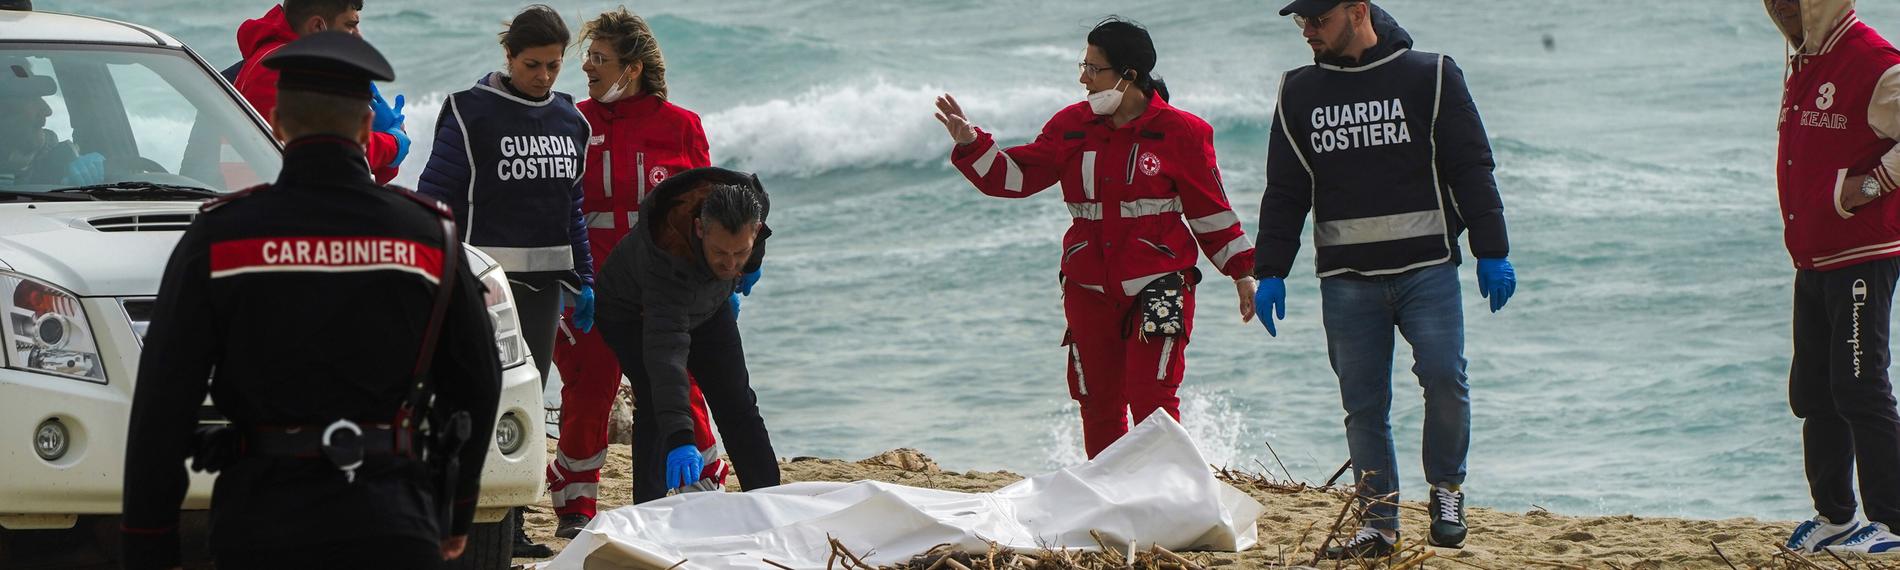 Mitarbeitende des italienischen Roten Kreuzes stehen am Strand und decken eine Leiche ab